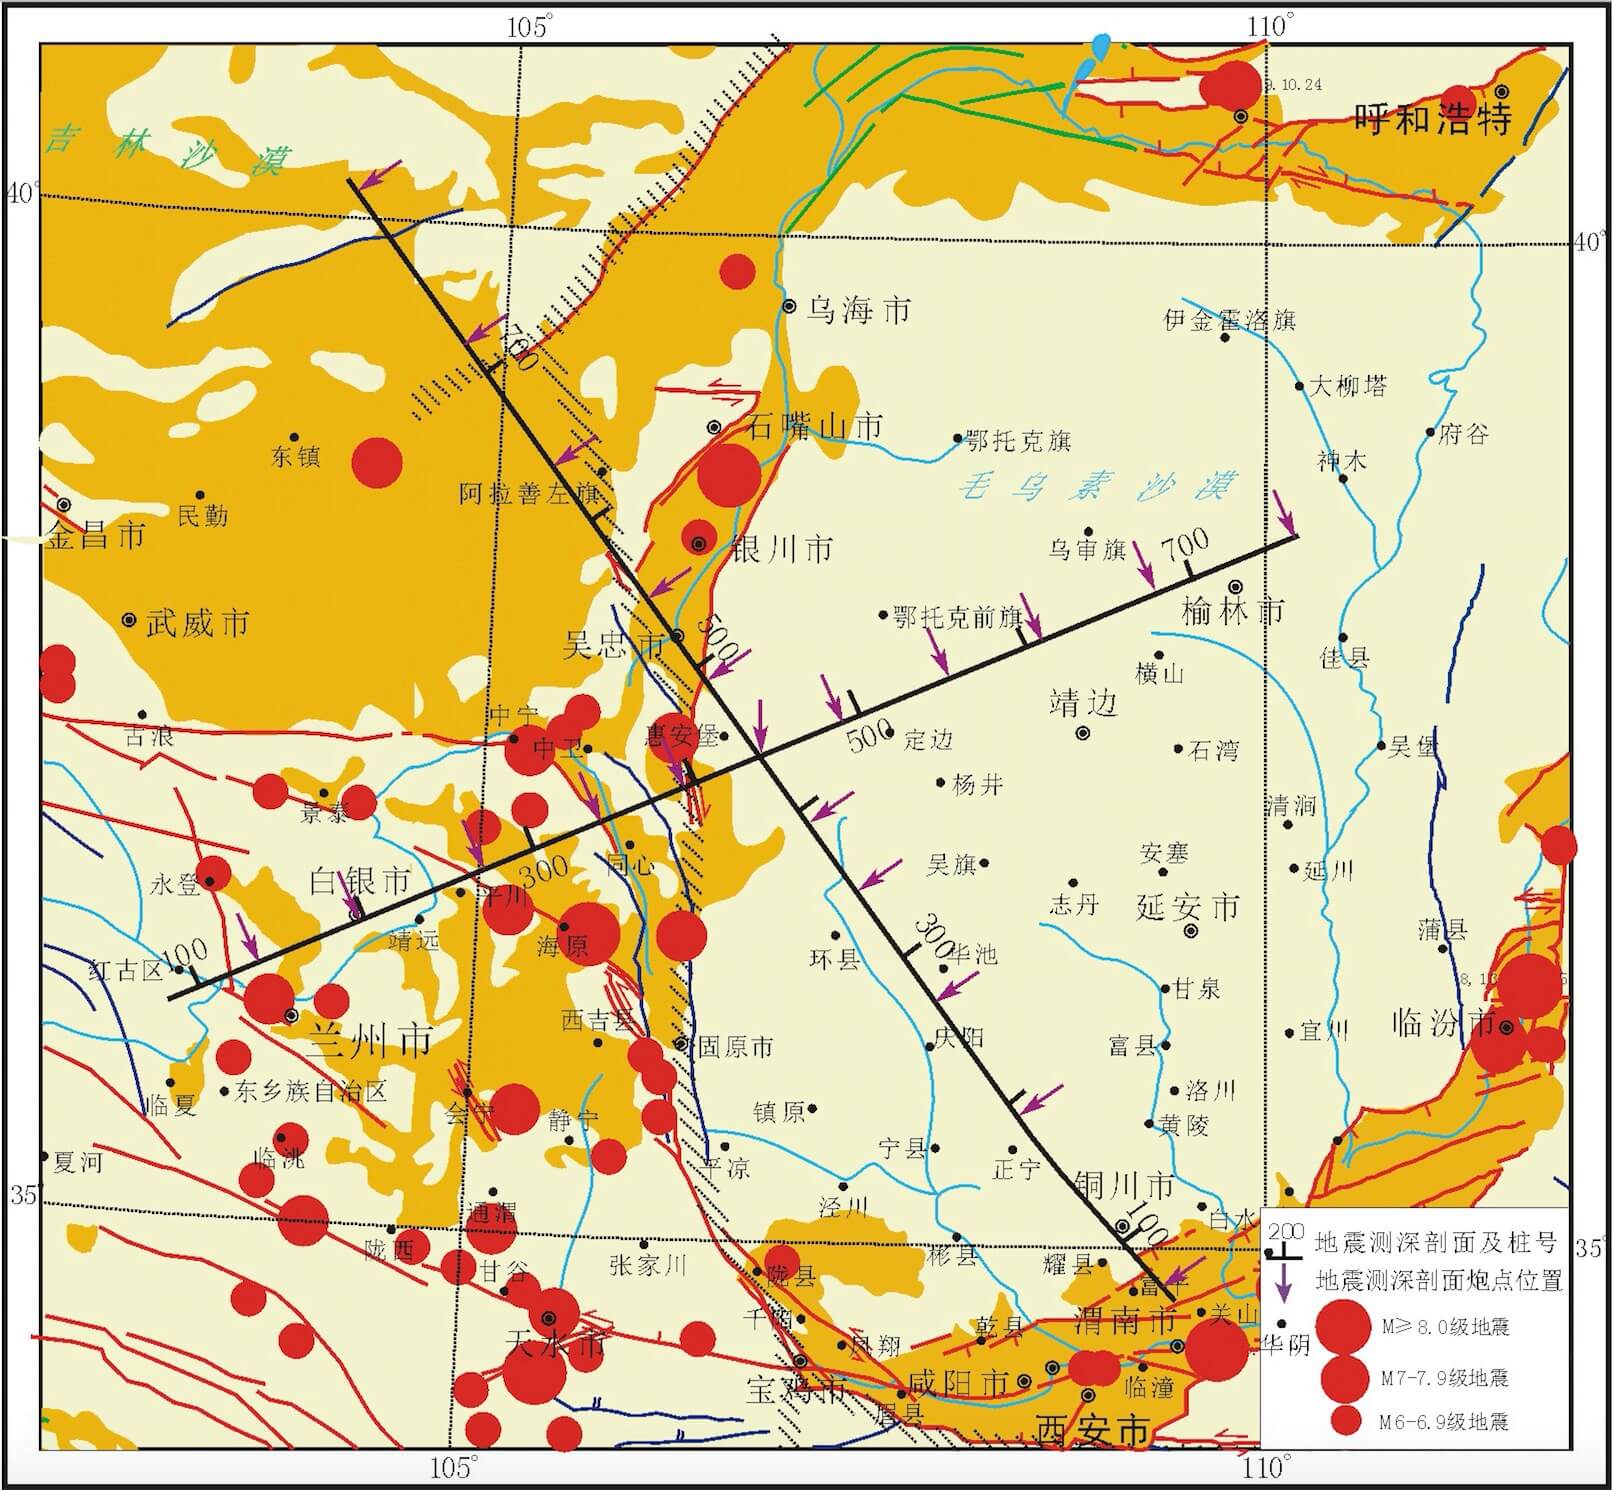 40280d0453e5add30153e5f414e50024#人工地震探测剖面点位信息